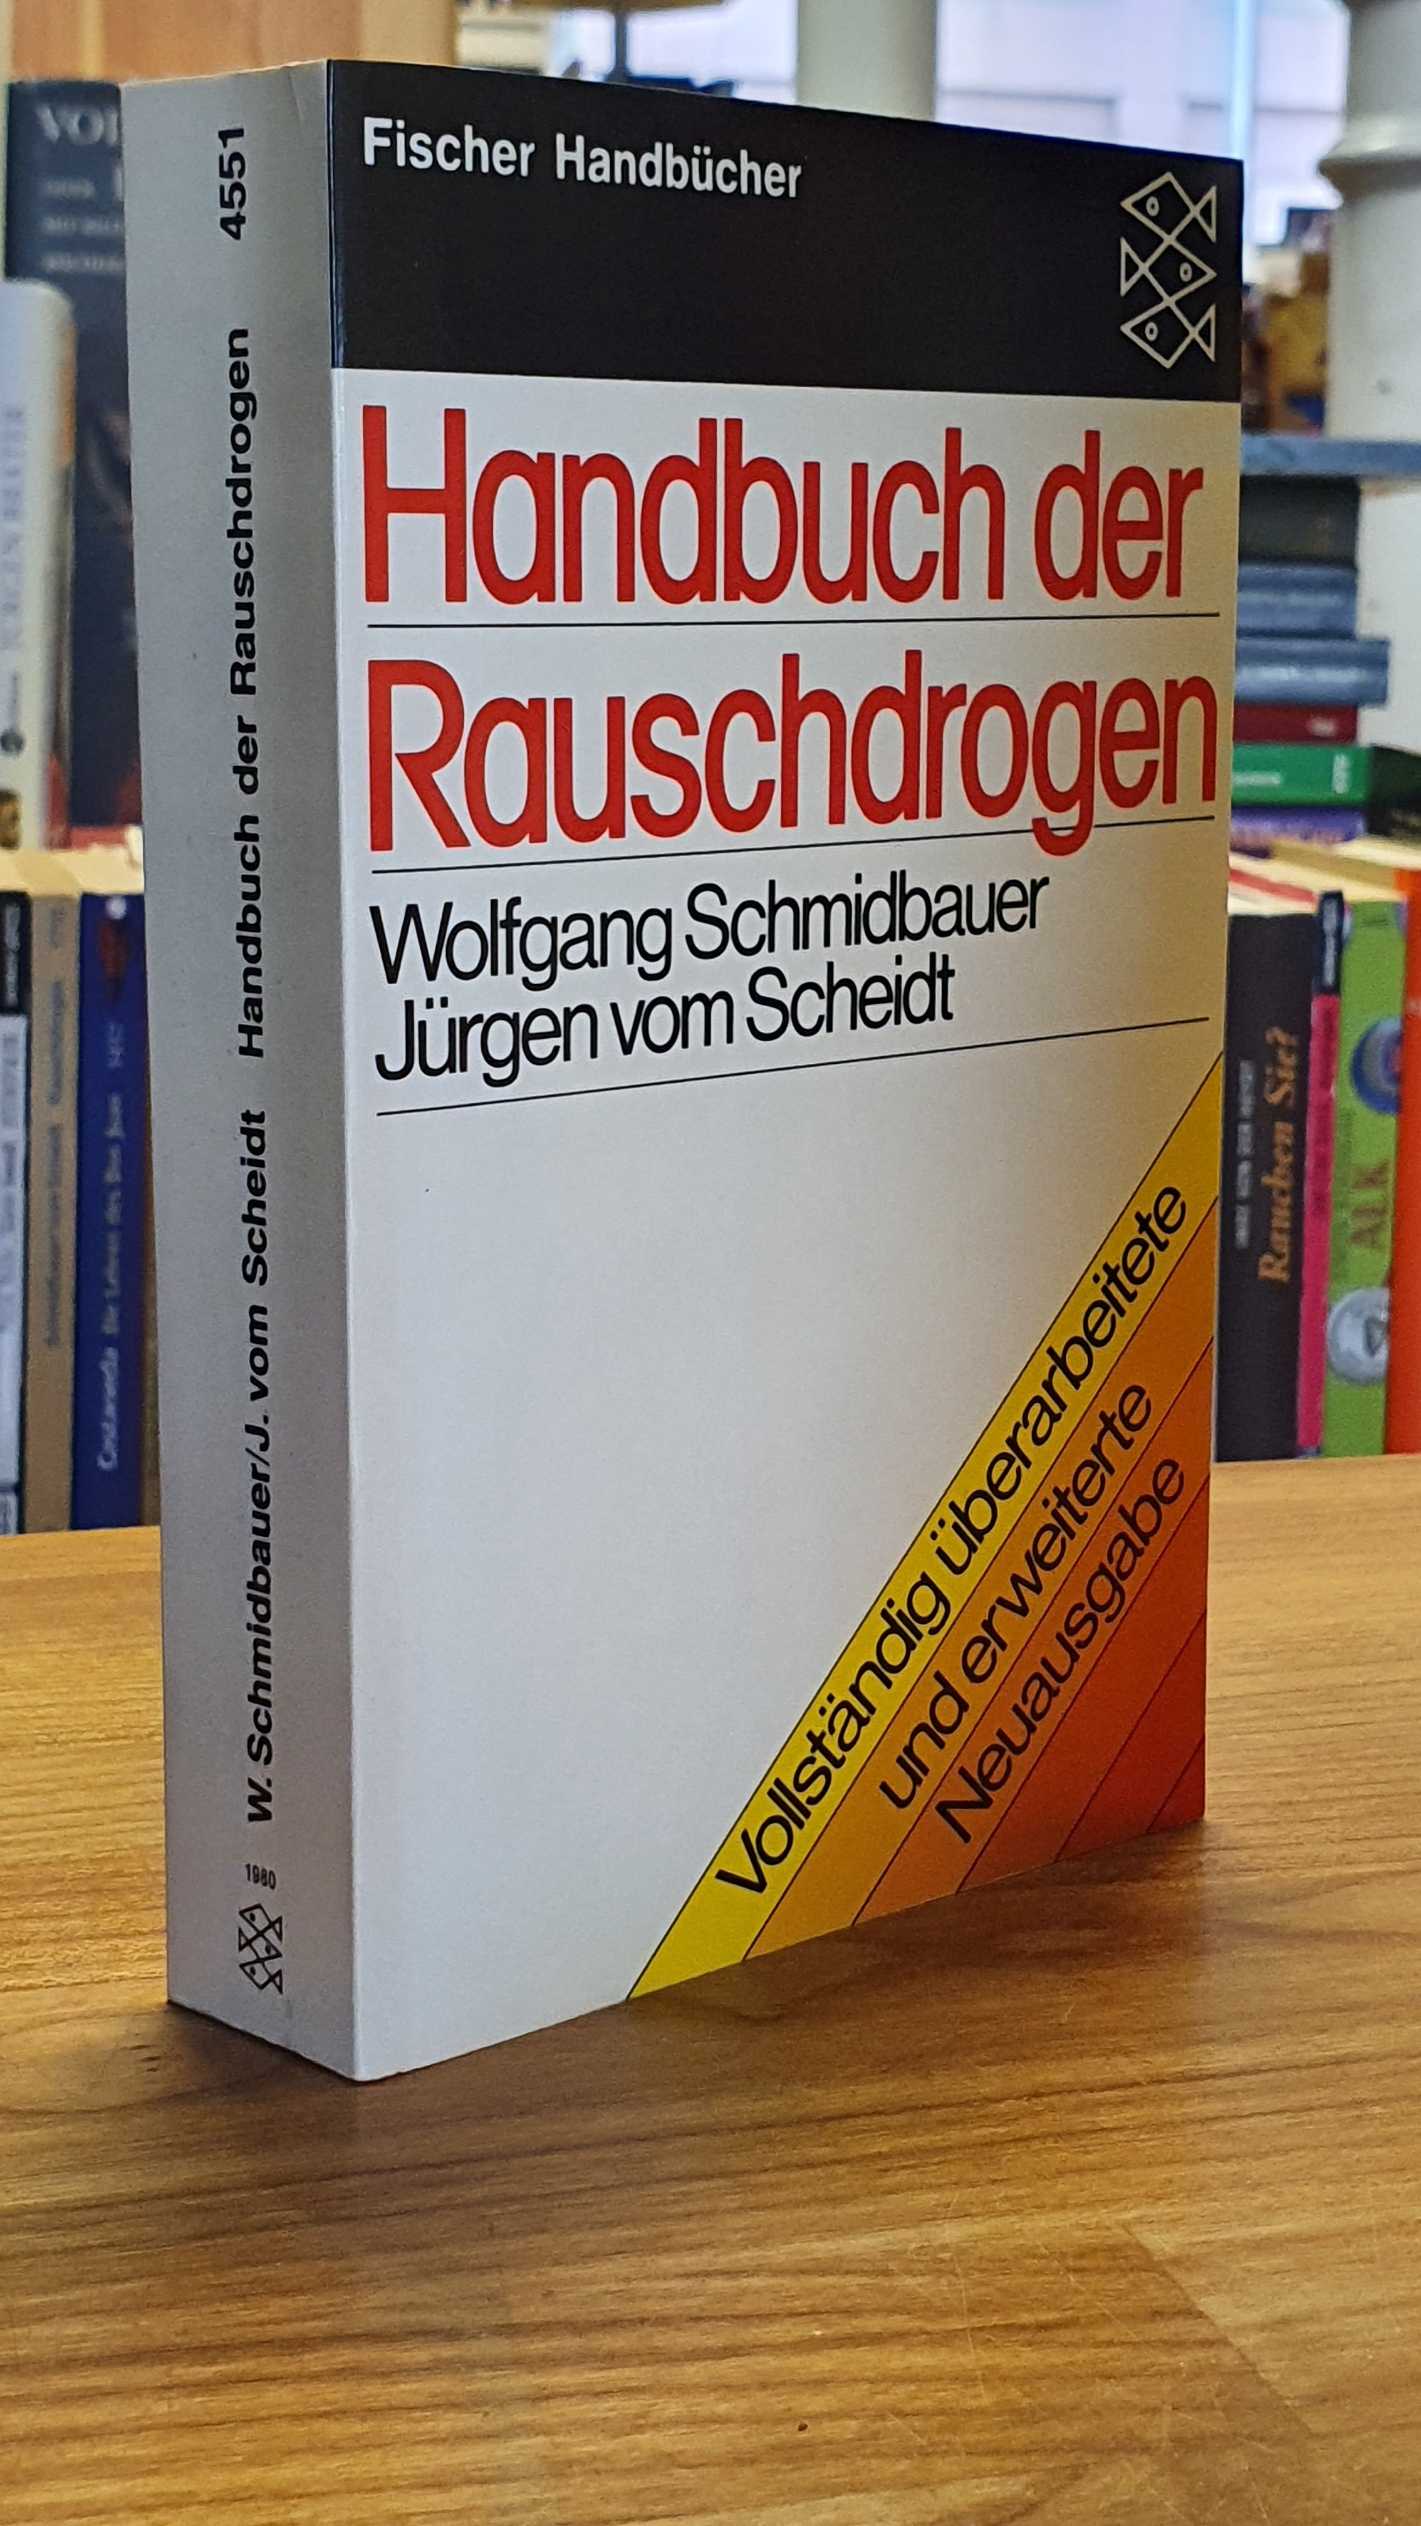 Handbuch der Rauschdrogen,